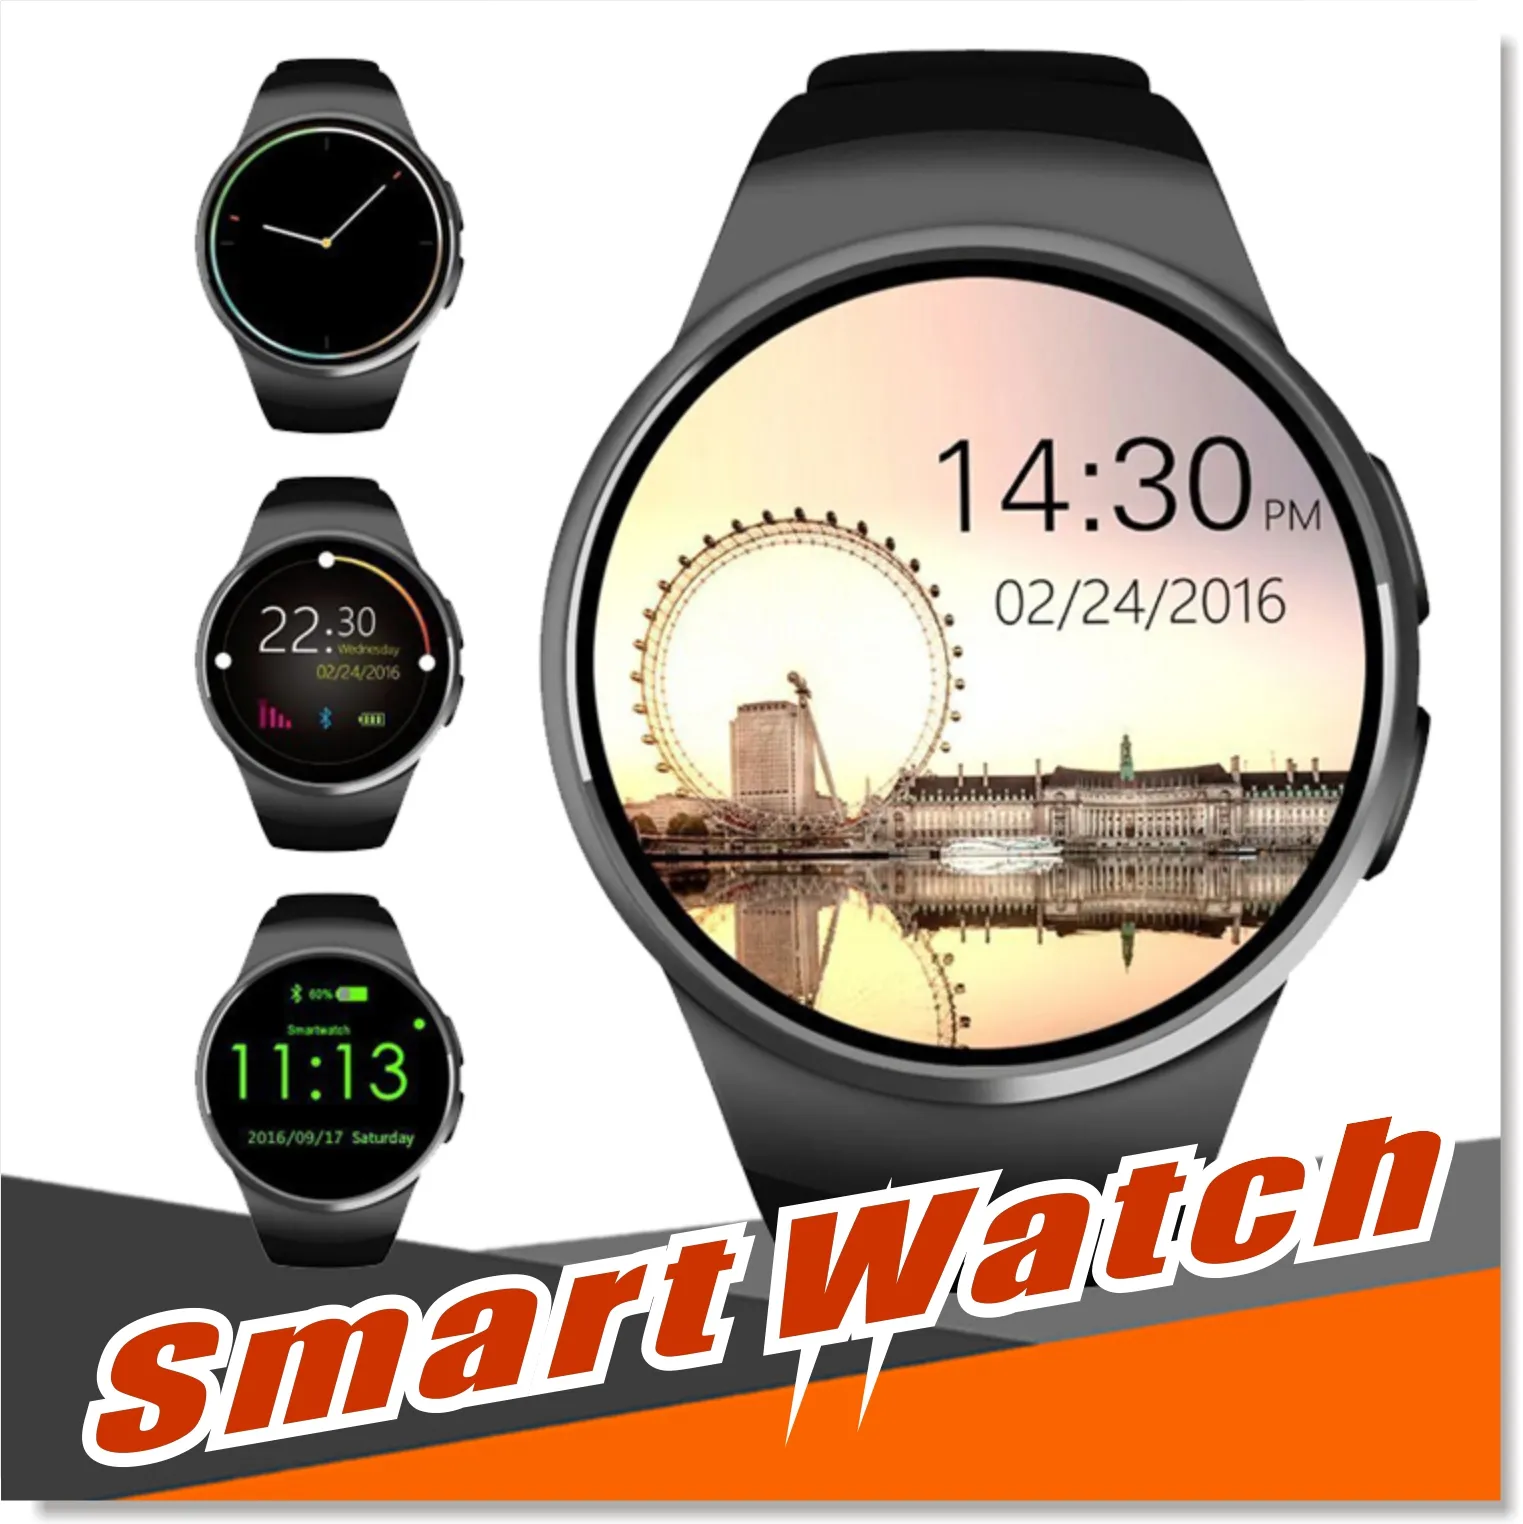 Smartwatch Bluetooth 1,3 pollici IPS Touch screen rotondo Resistente all'acqua KW18 Smartwatch Telefono con slot per scheda SIM Monitor della frequenza cardiaca per il sonno